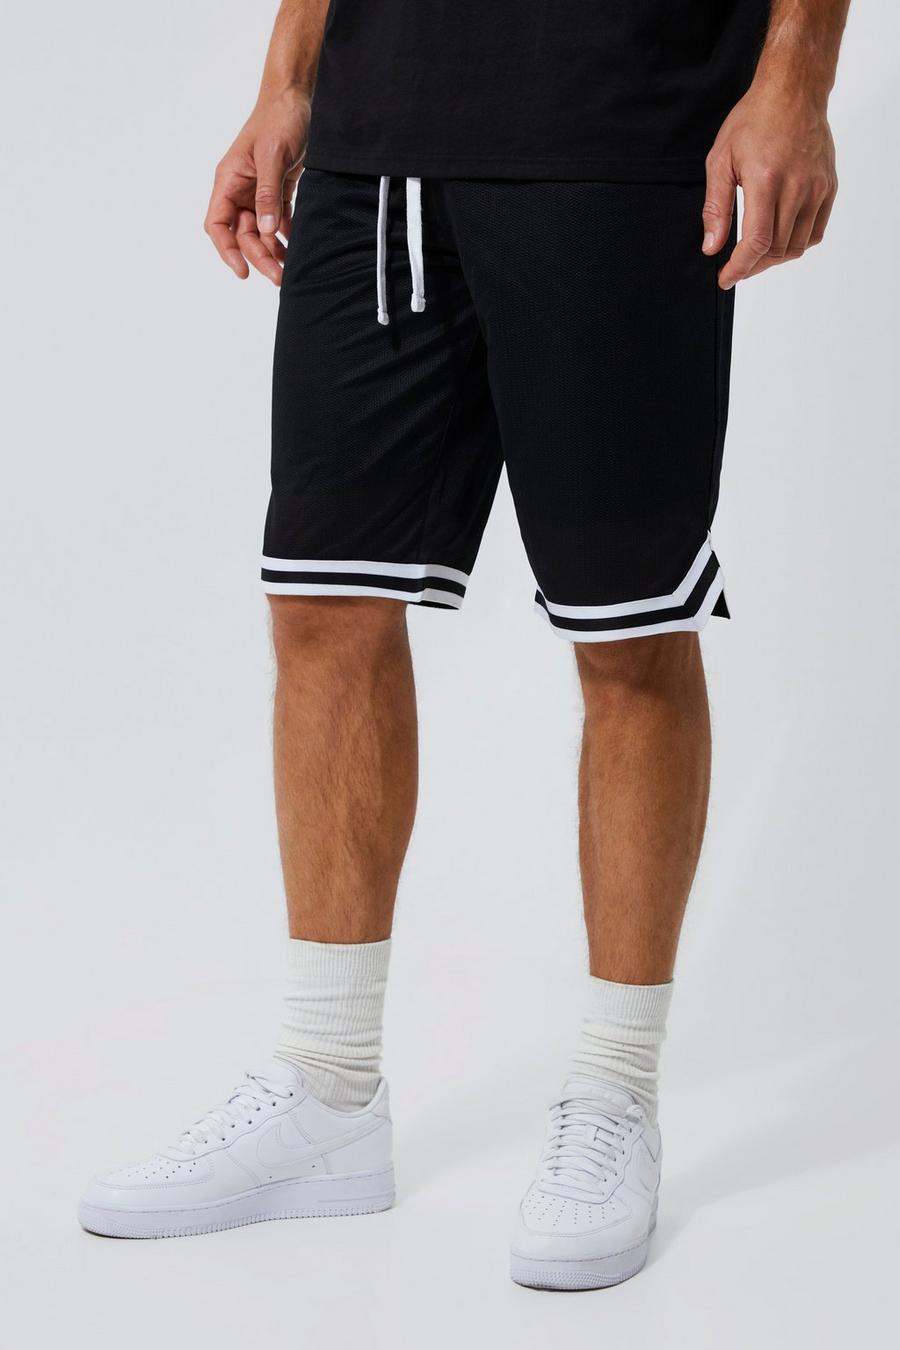 Pantaloncini da basket Tall in Airtex con fascia, Nero